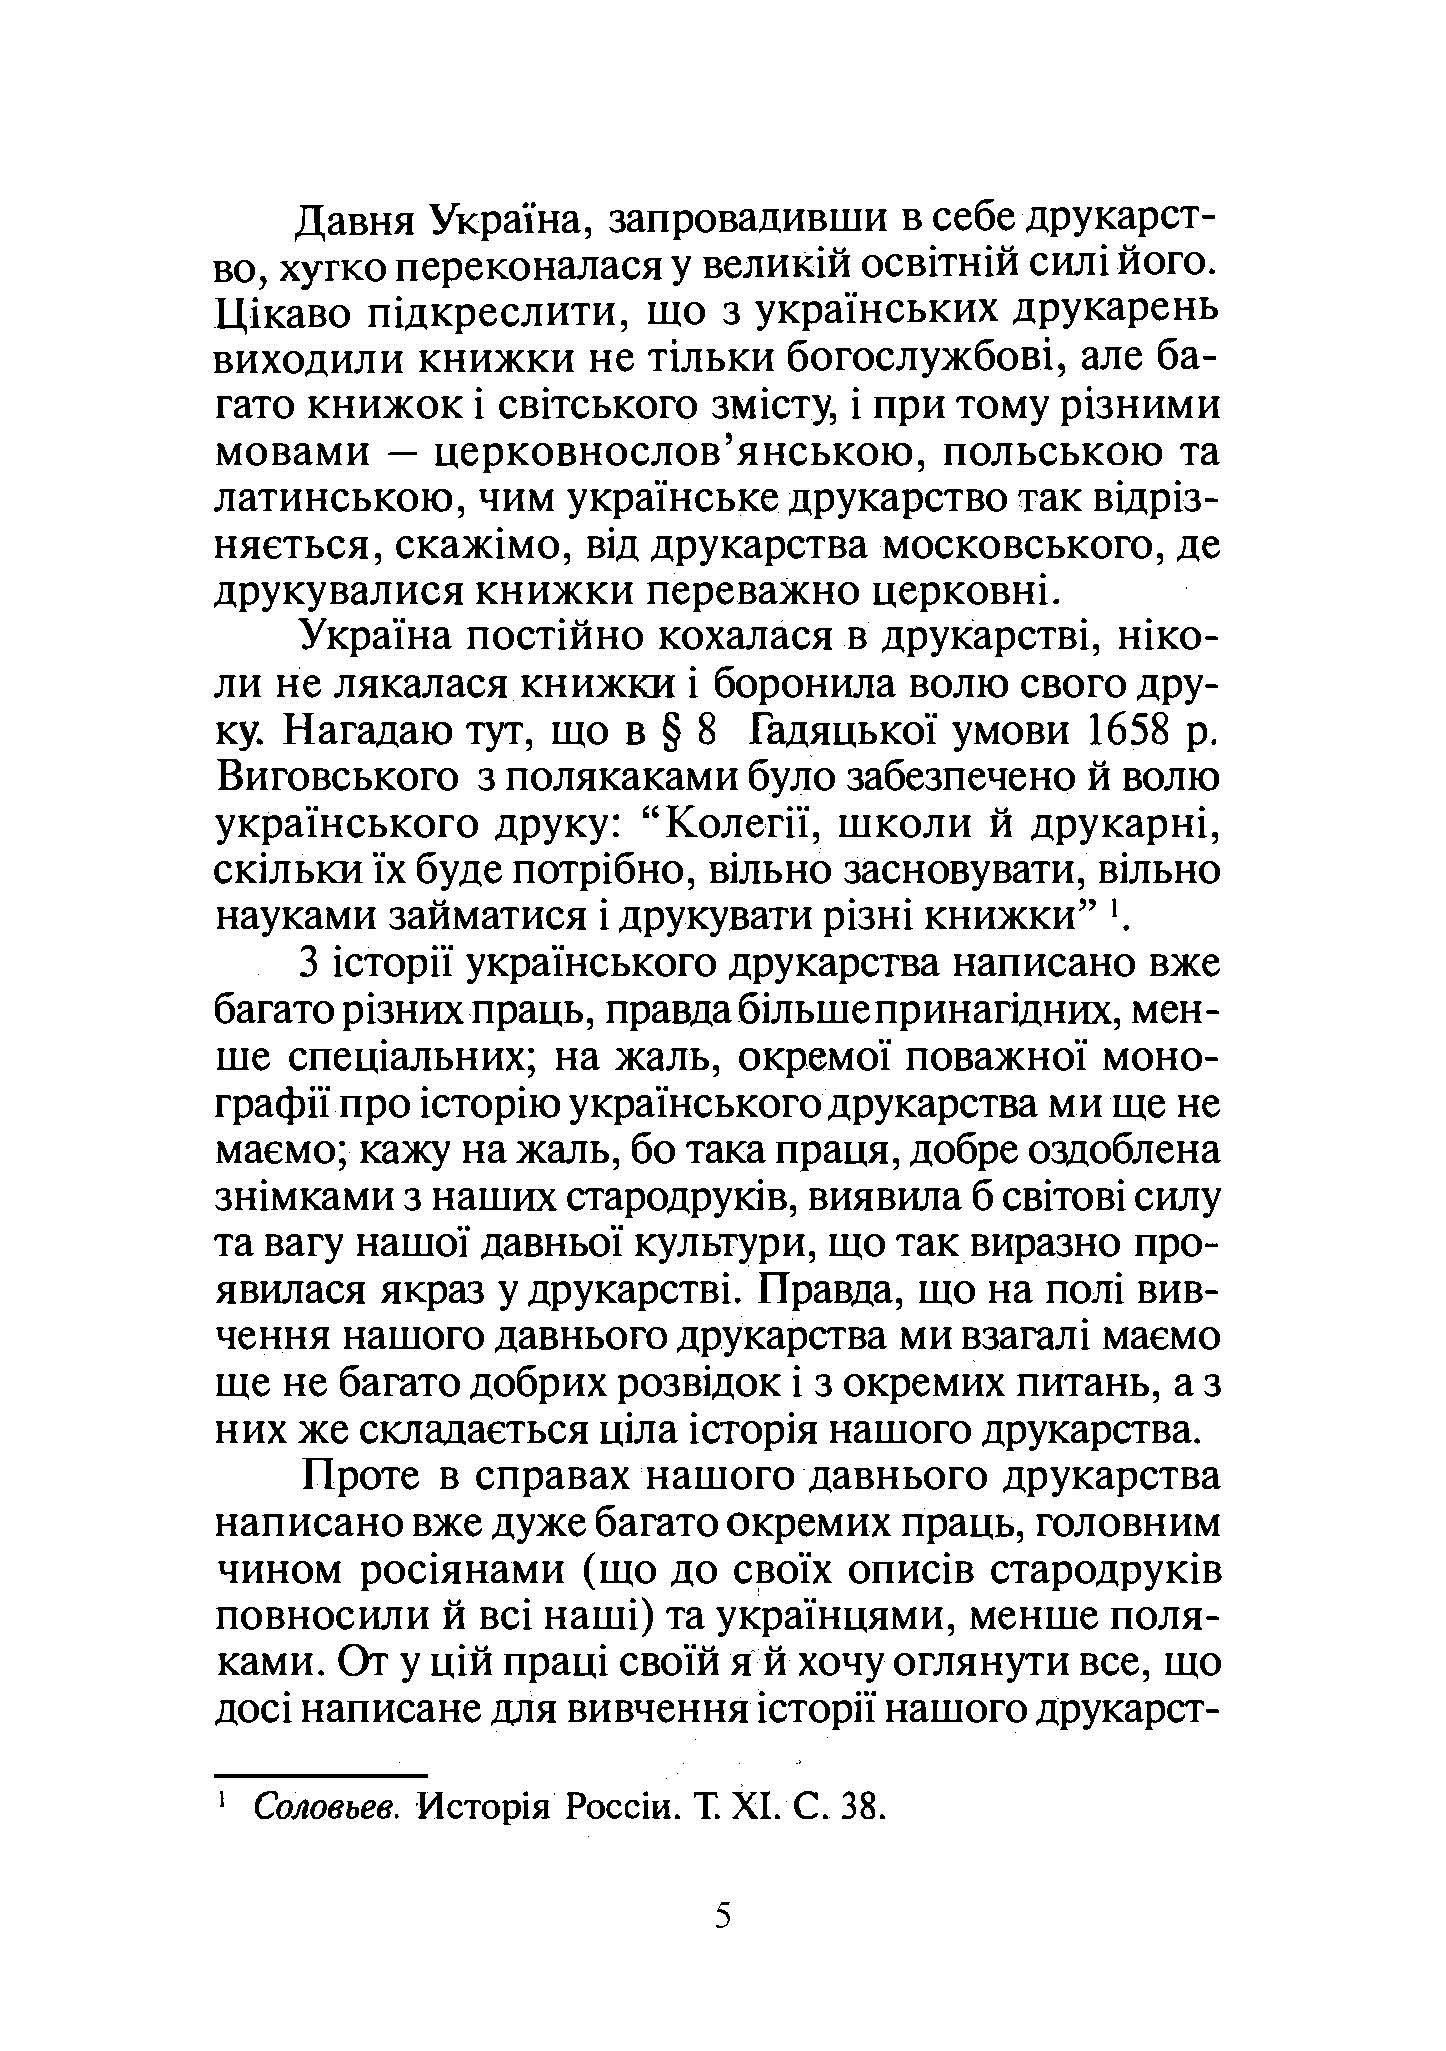 Історія українського друкарства  (2021 год). Автор — Іван Огієнко. 